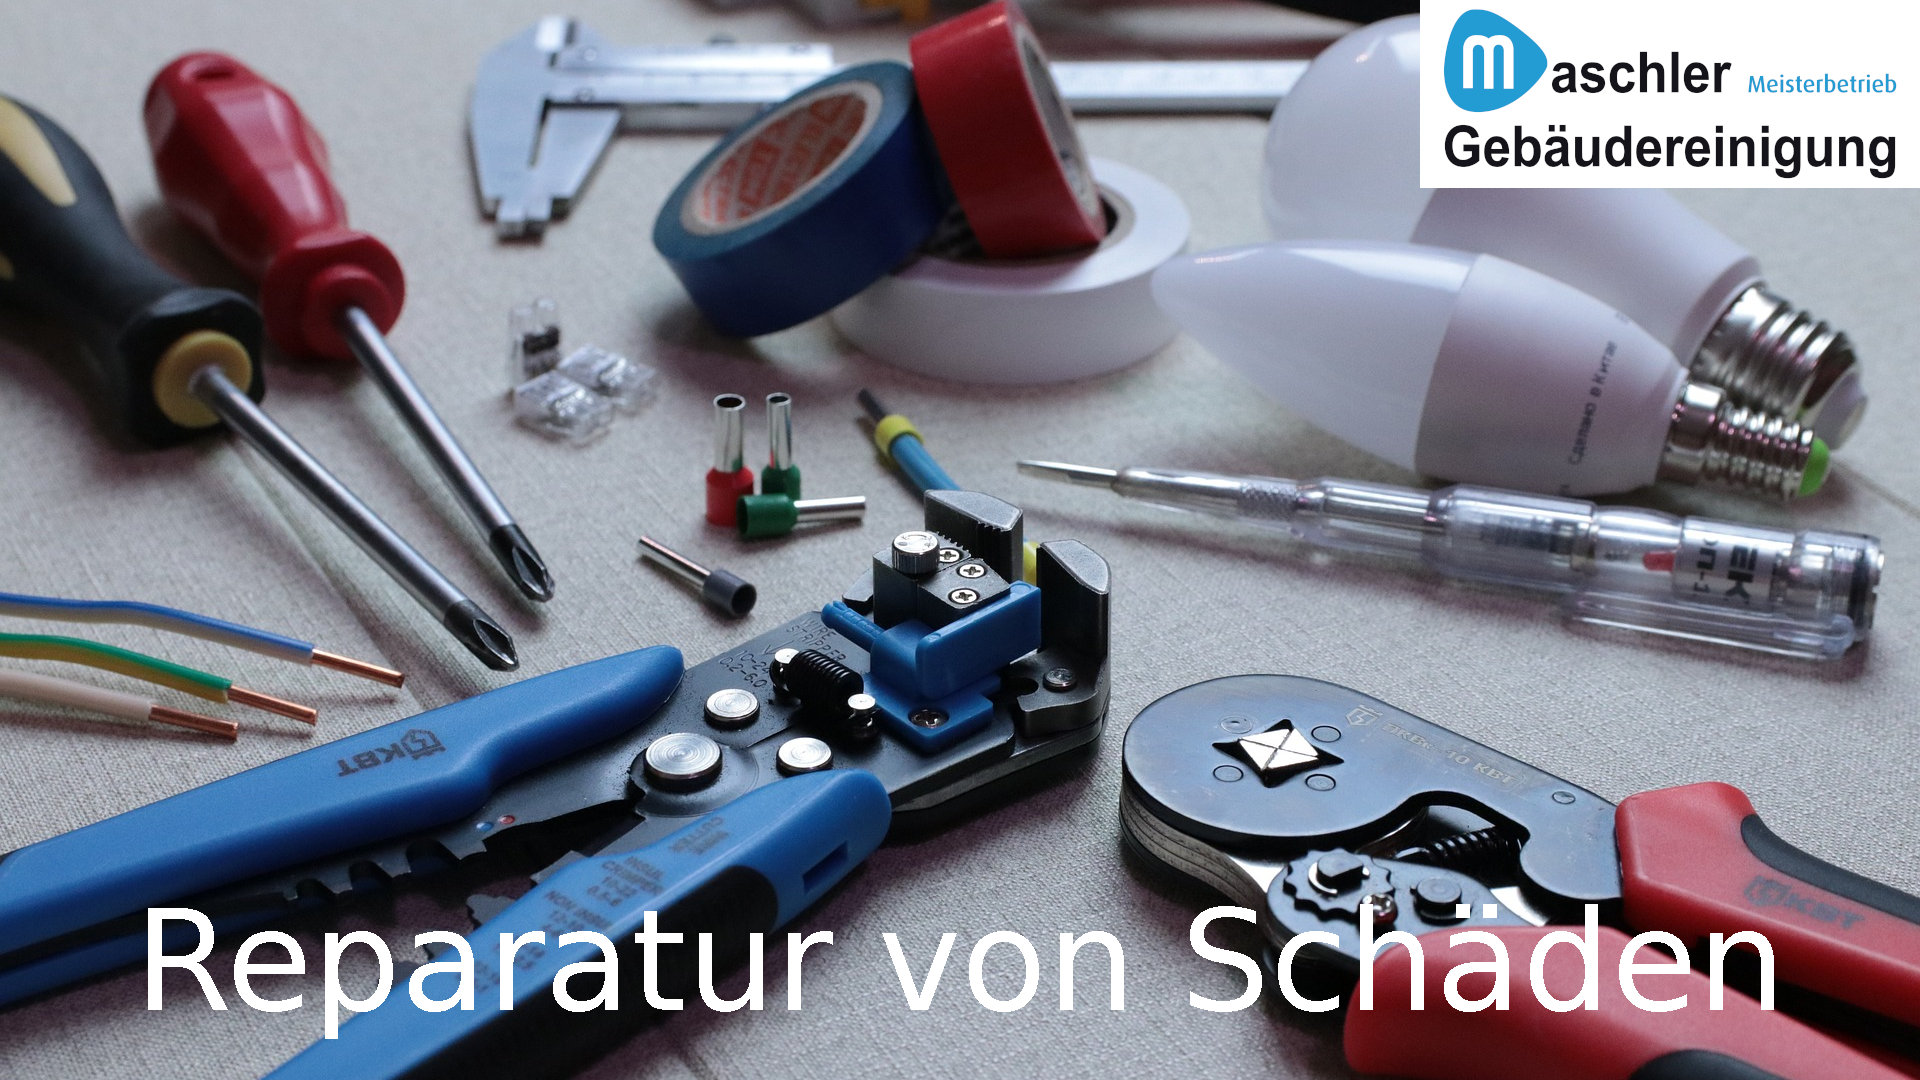 Reparatur von kleinen Schäden - Gebäudereinigung Maschler GmbH